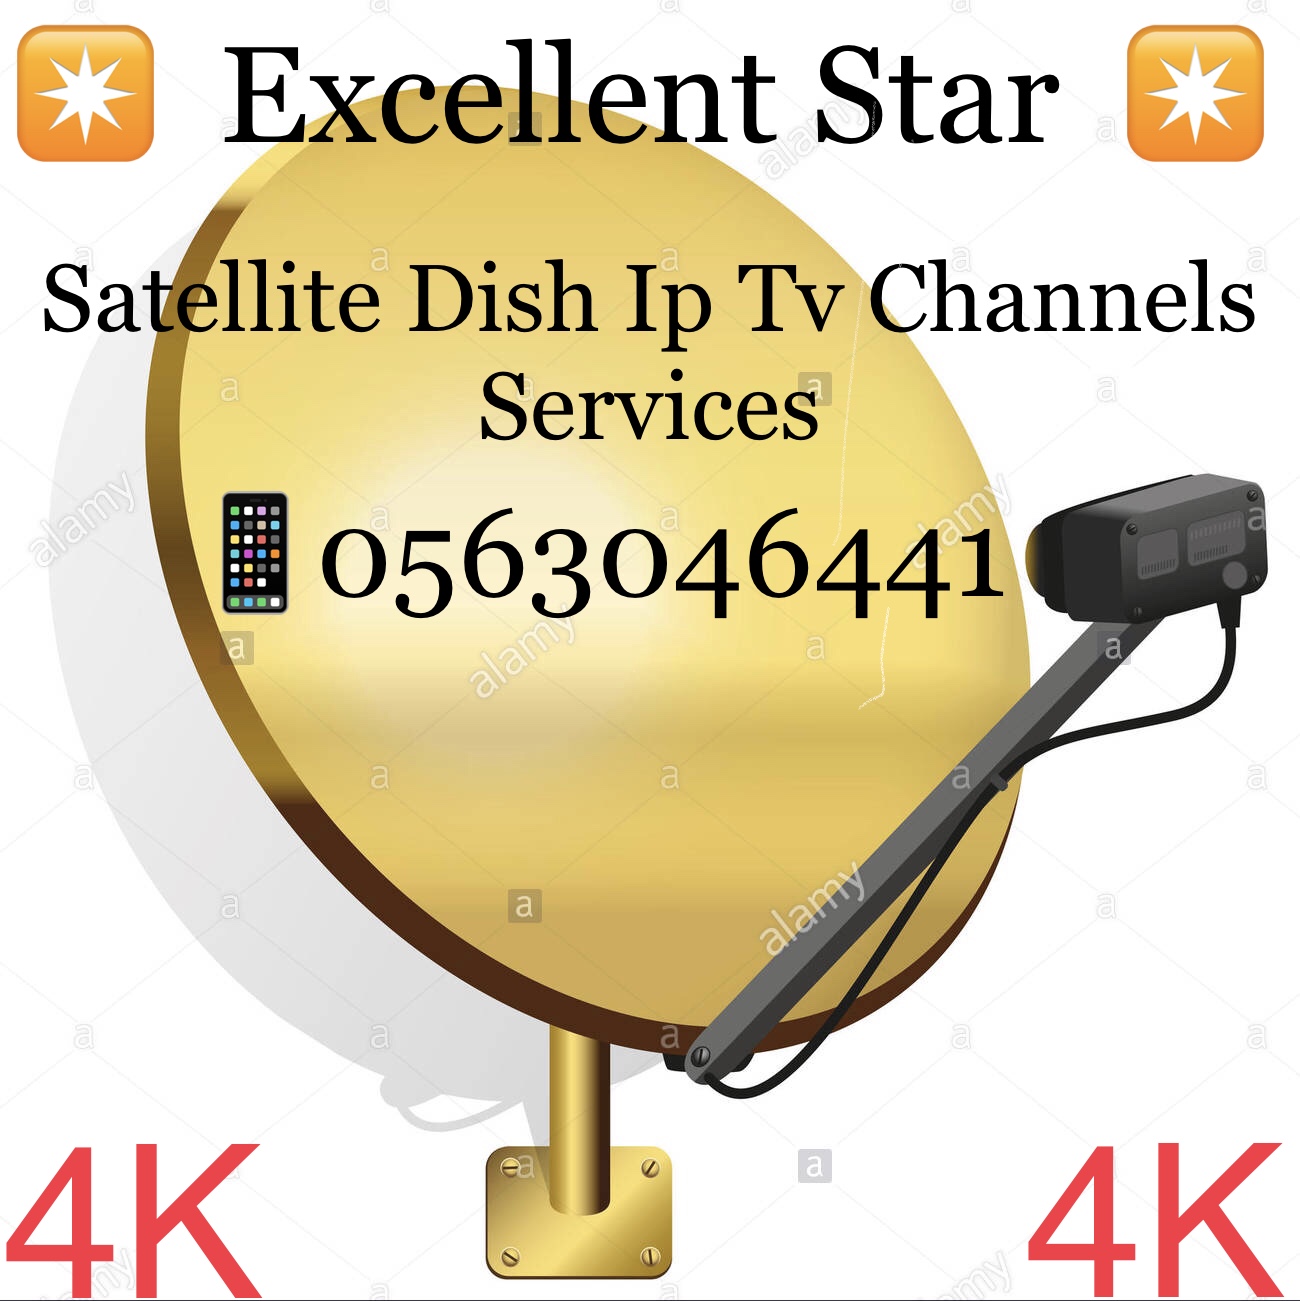 Satellite Iptv 4k  Channels Installation 0563046441